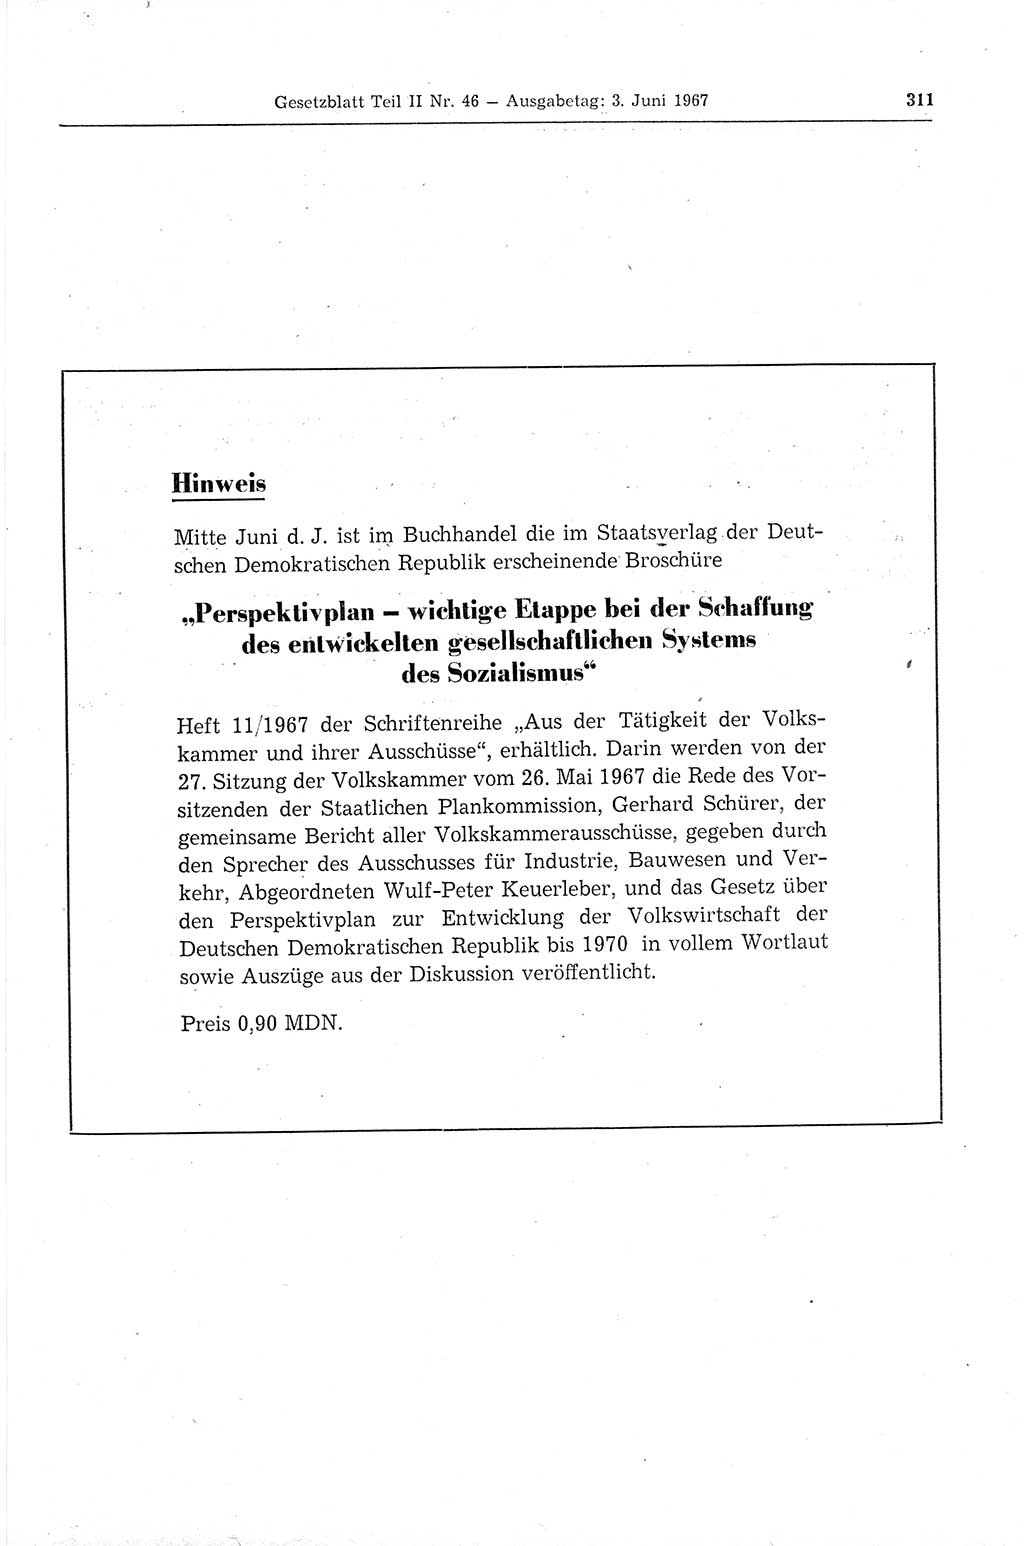 Gesetzblatt (GBl.) der Deutschen Demokratischen Republik (DDR) Teil ⅠⅠ 1967, Seite 311 (GBl. DDR ⅠⅠ 1967, S. 311)